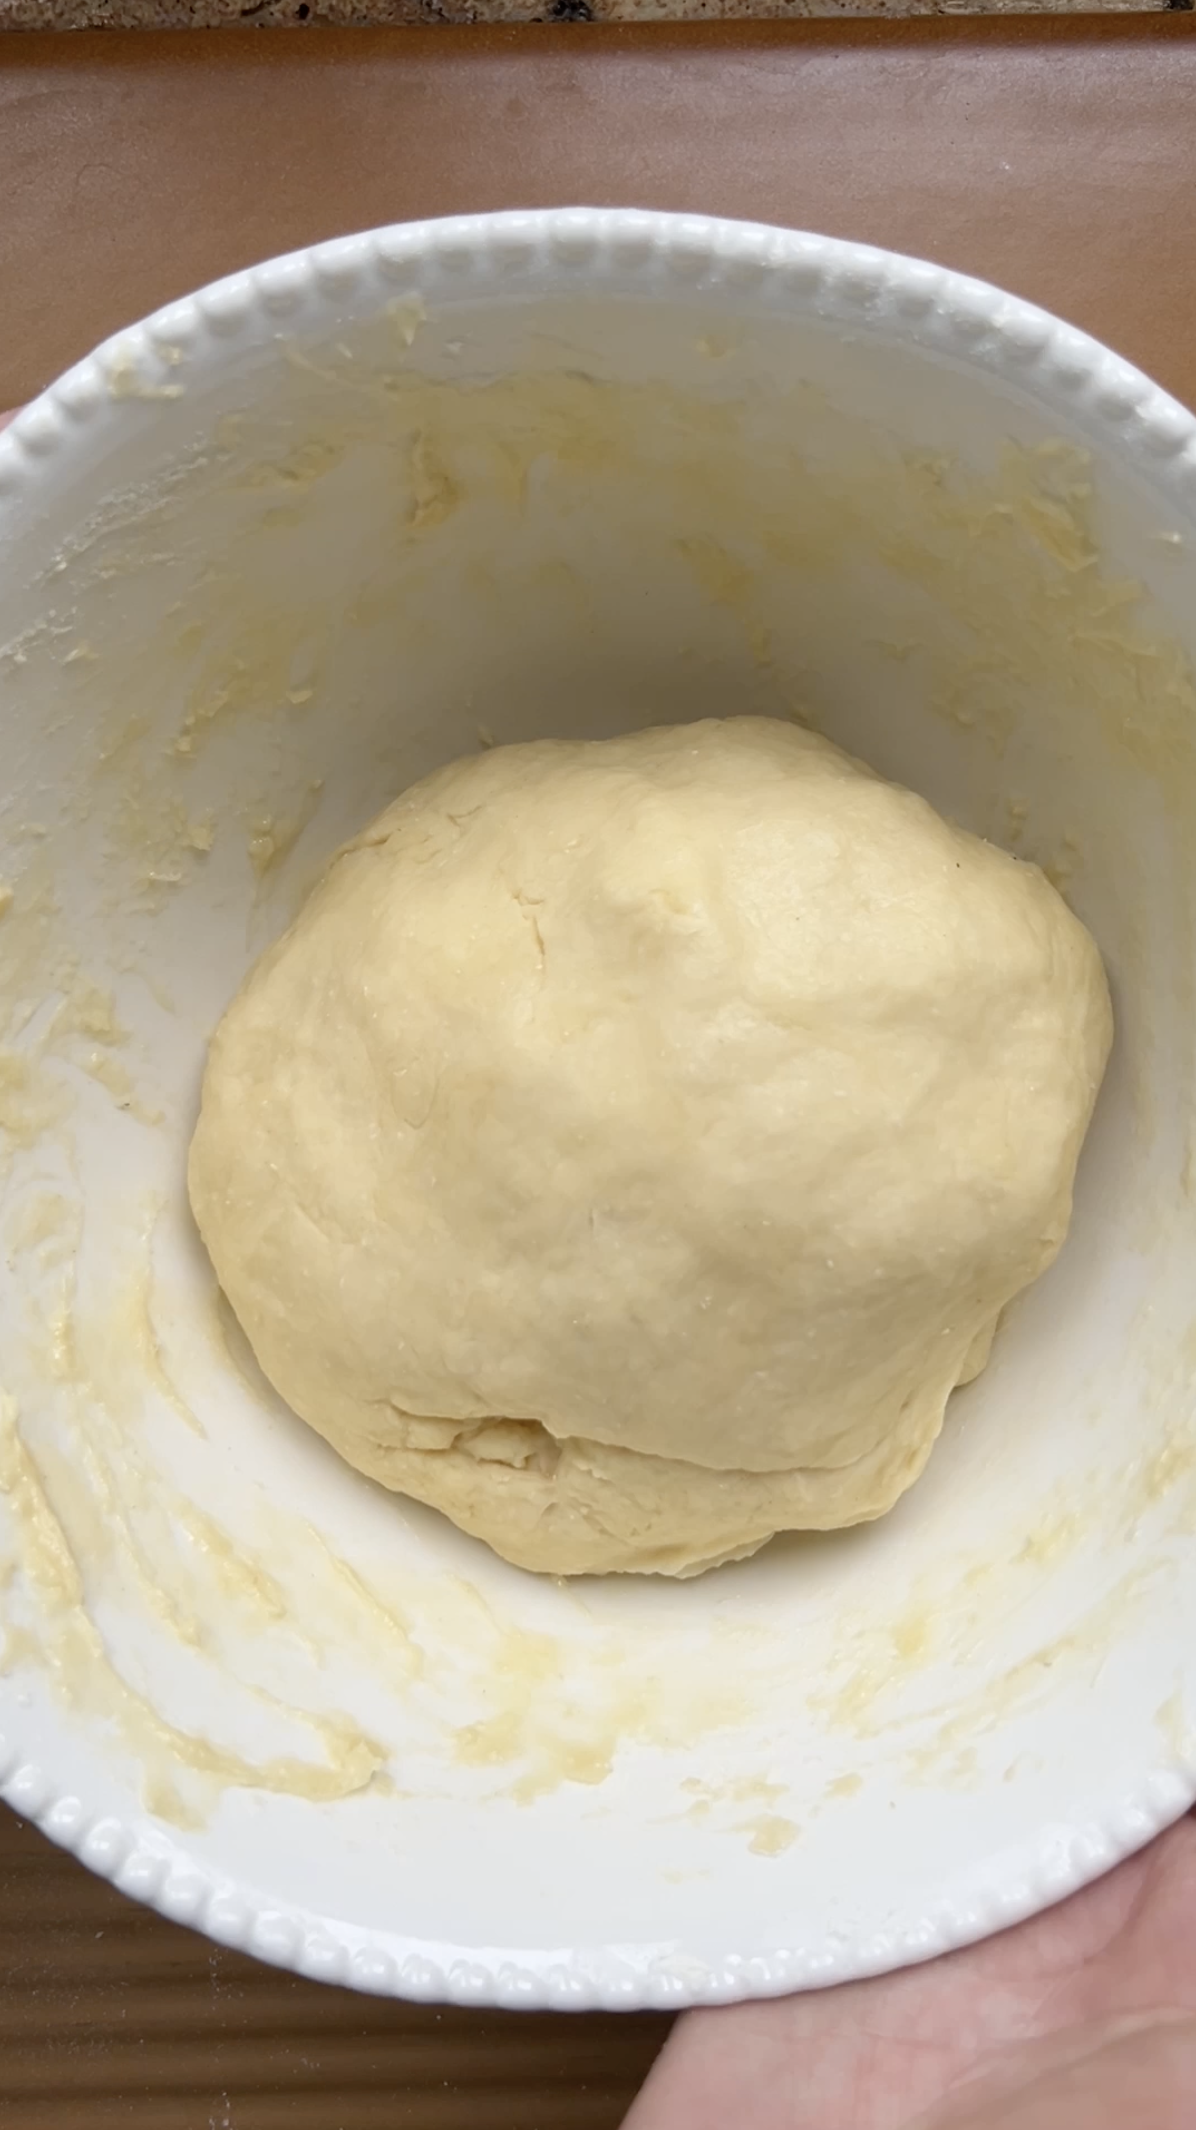 La boule de pâte placée dans un bol blanc, avant la première levée.